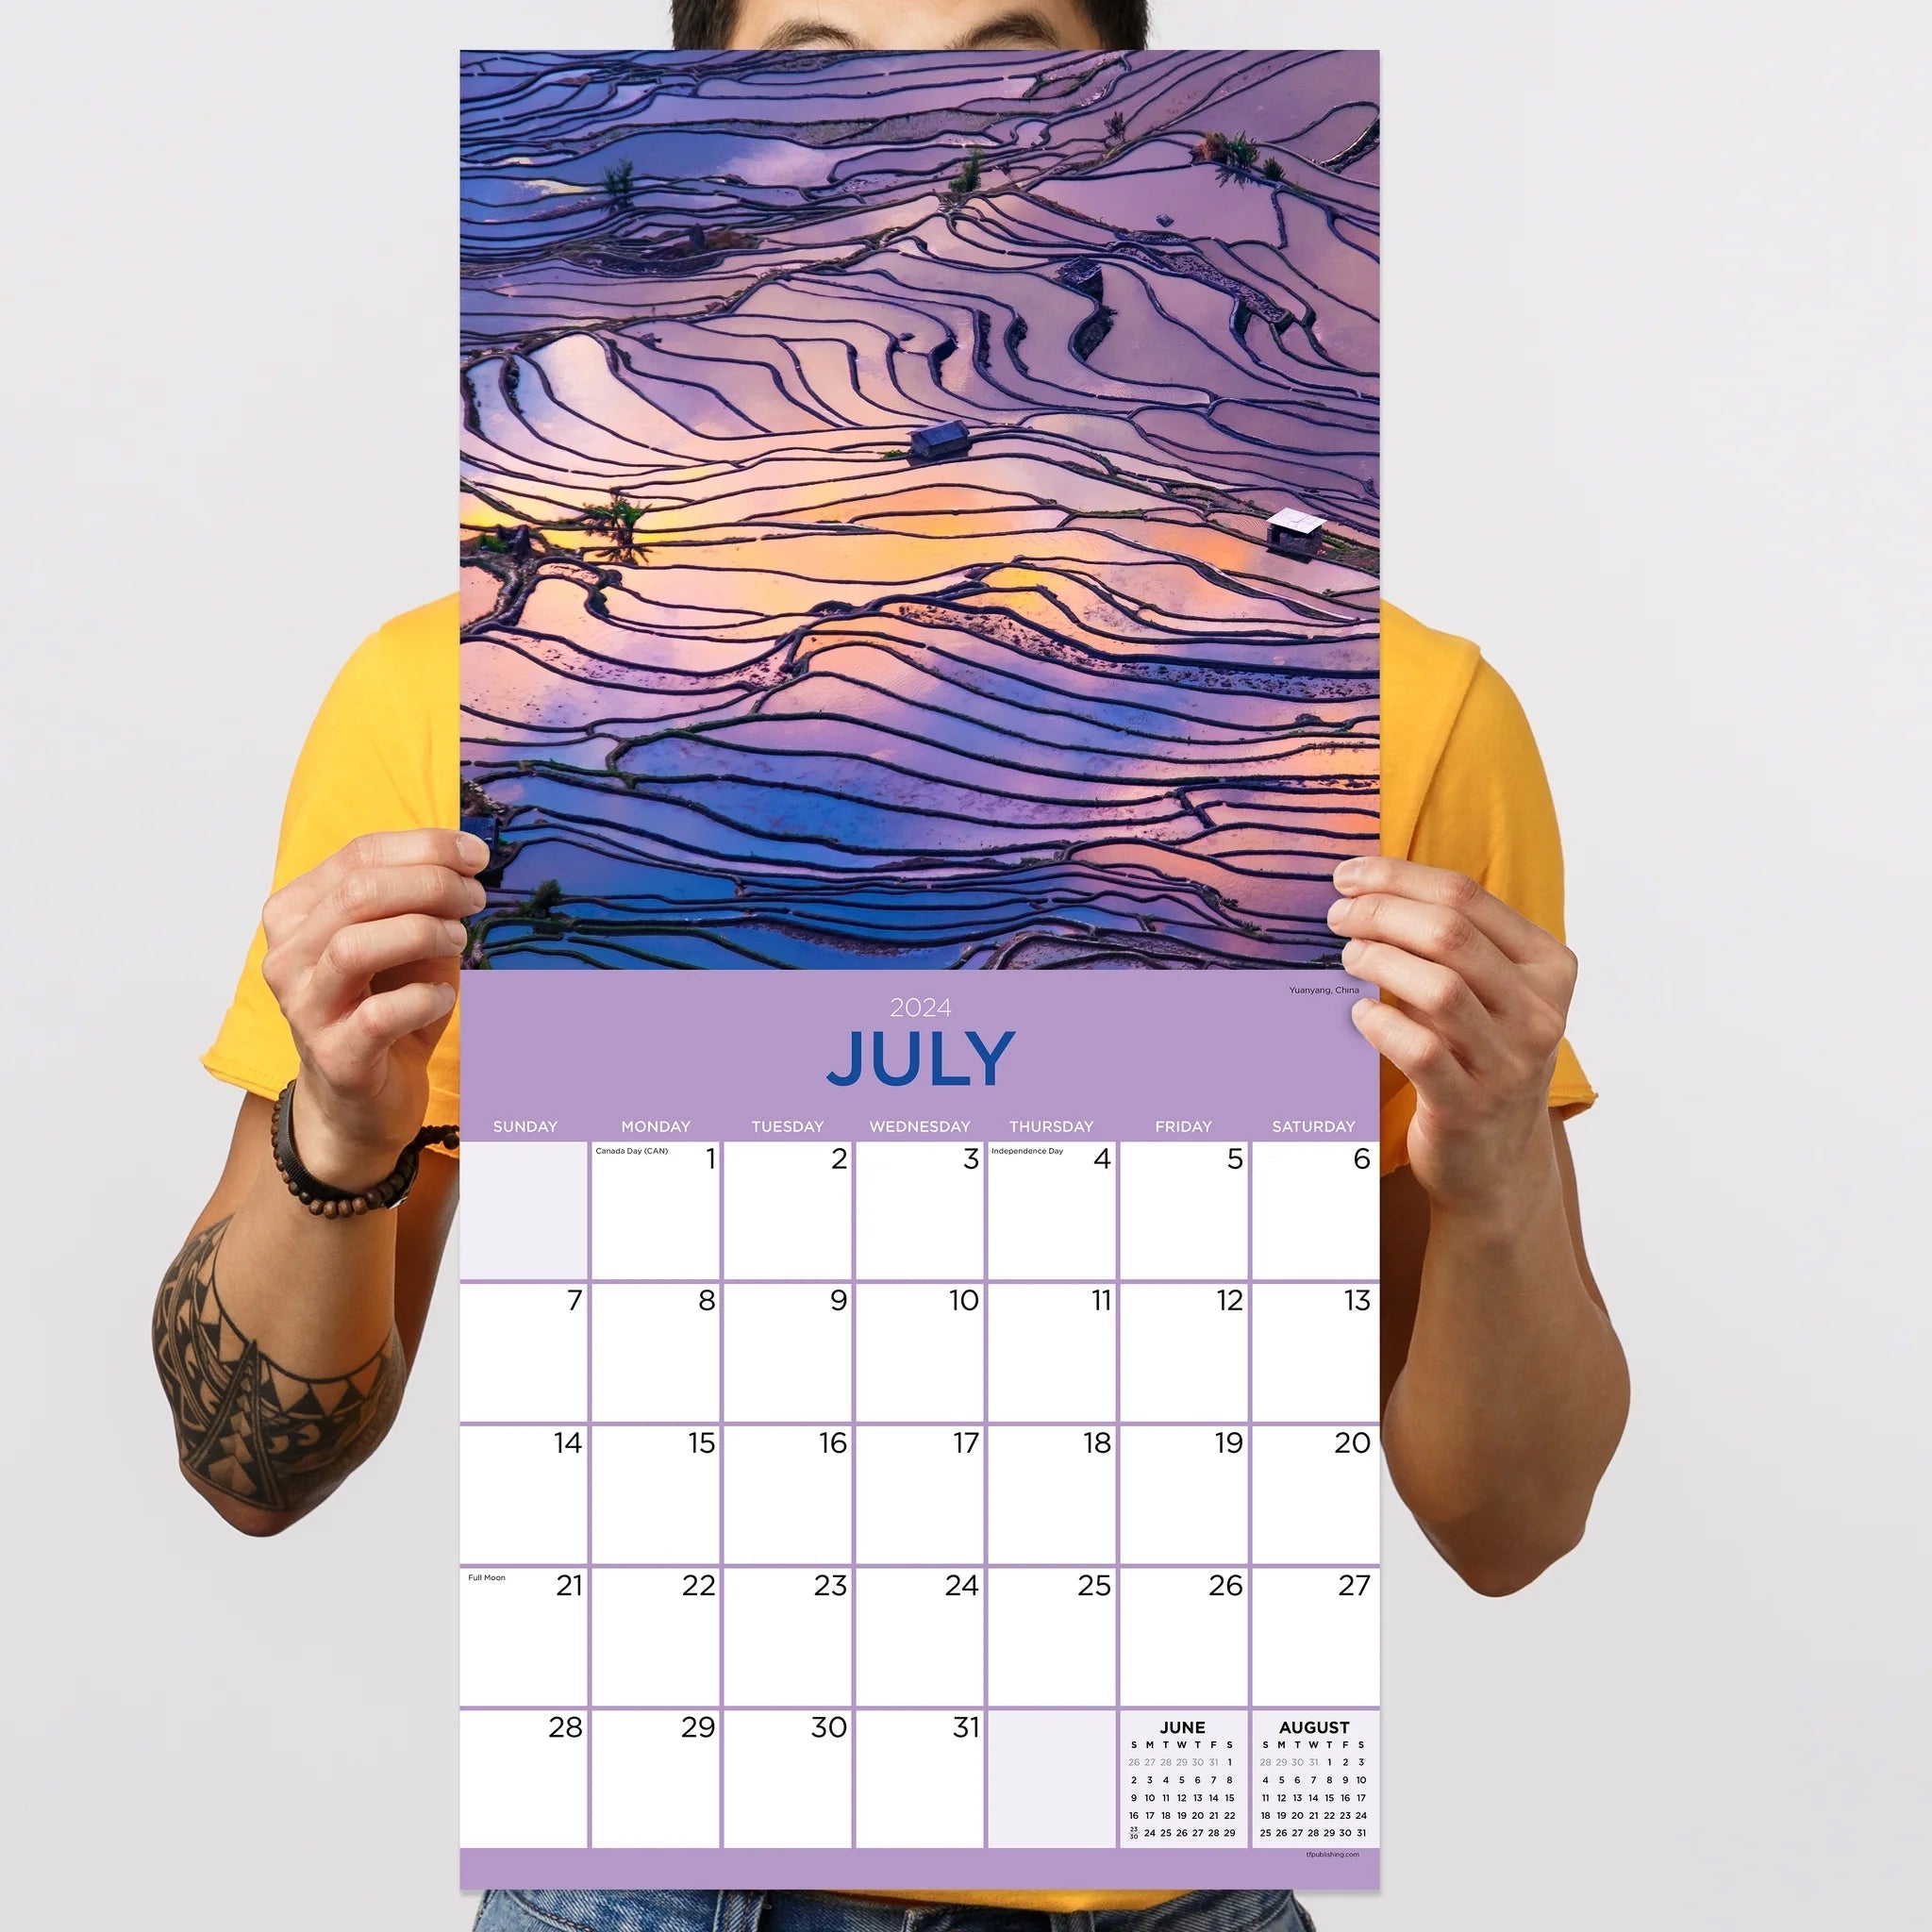 2024 Landscapes - Square Wall Calendar